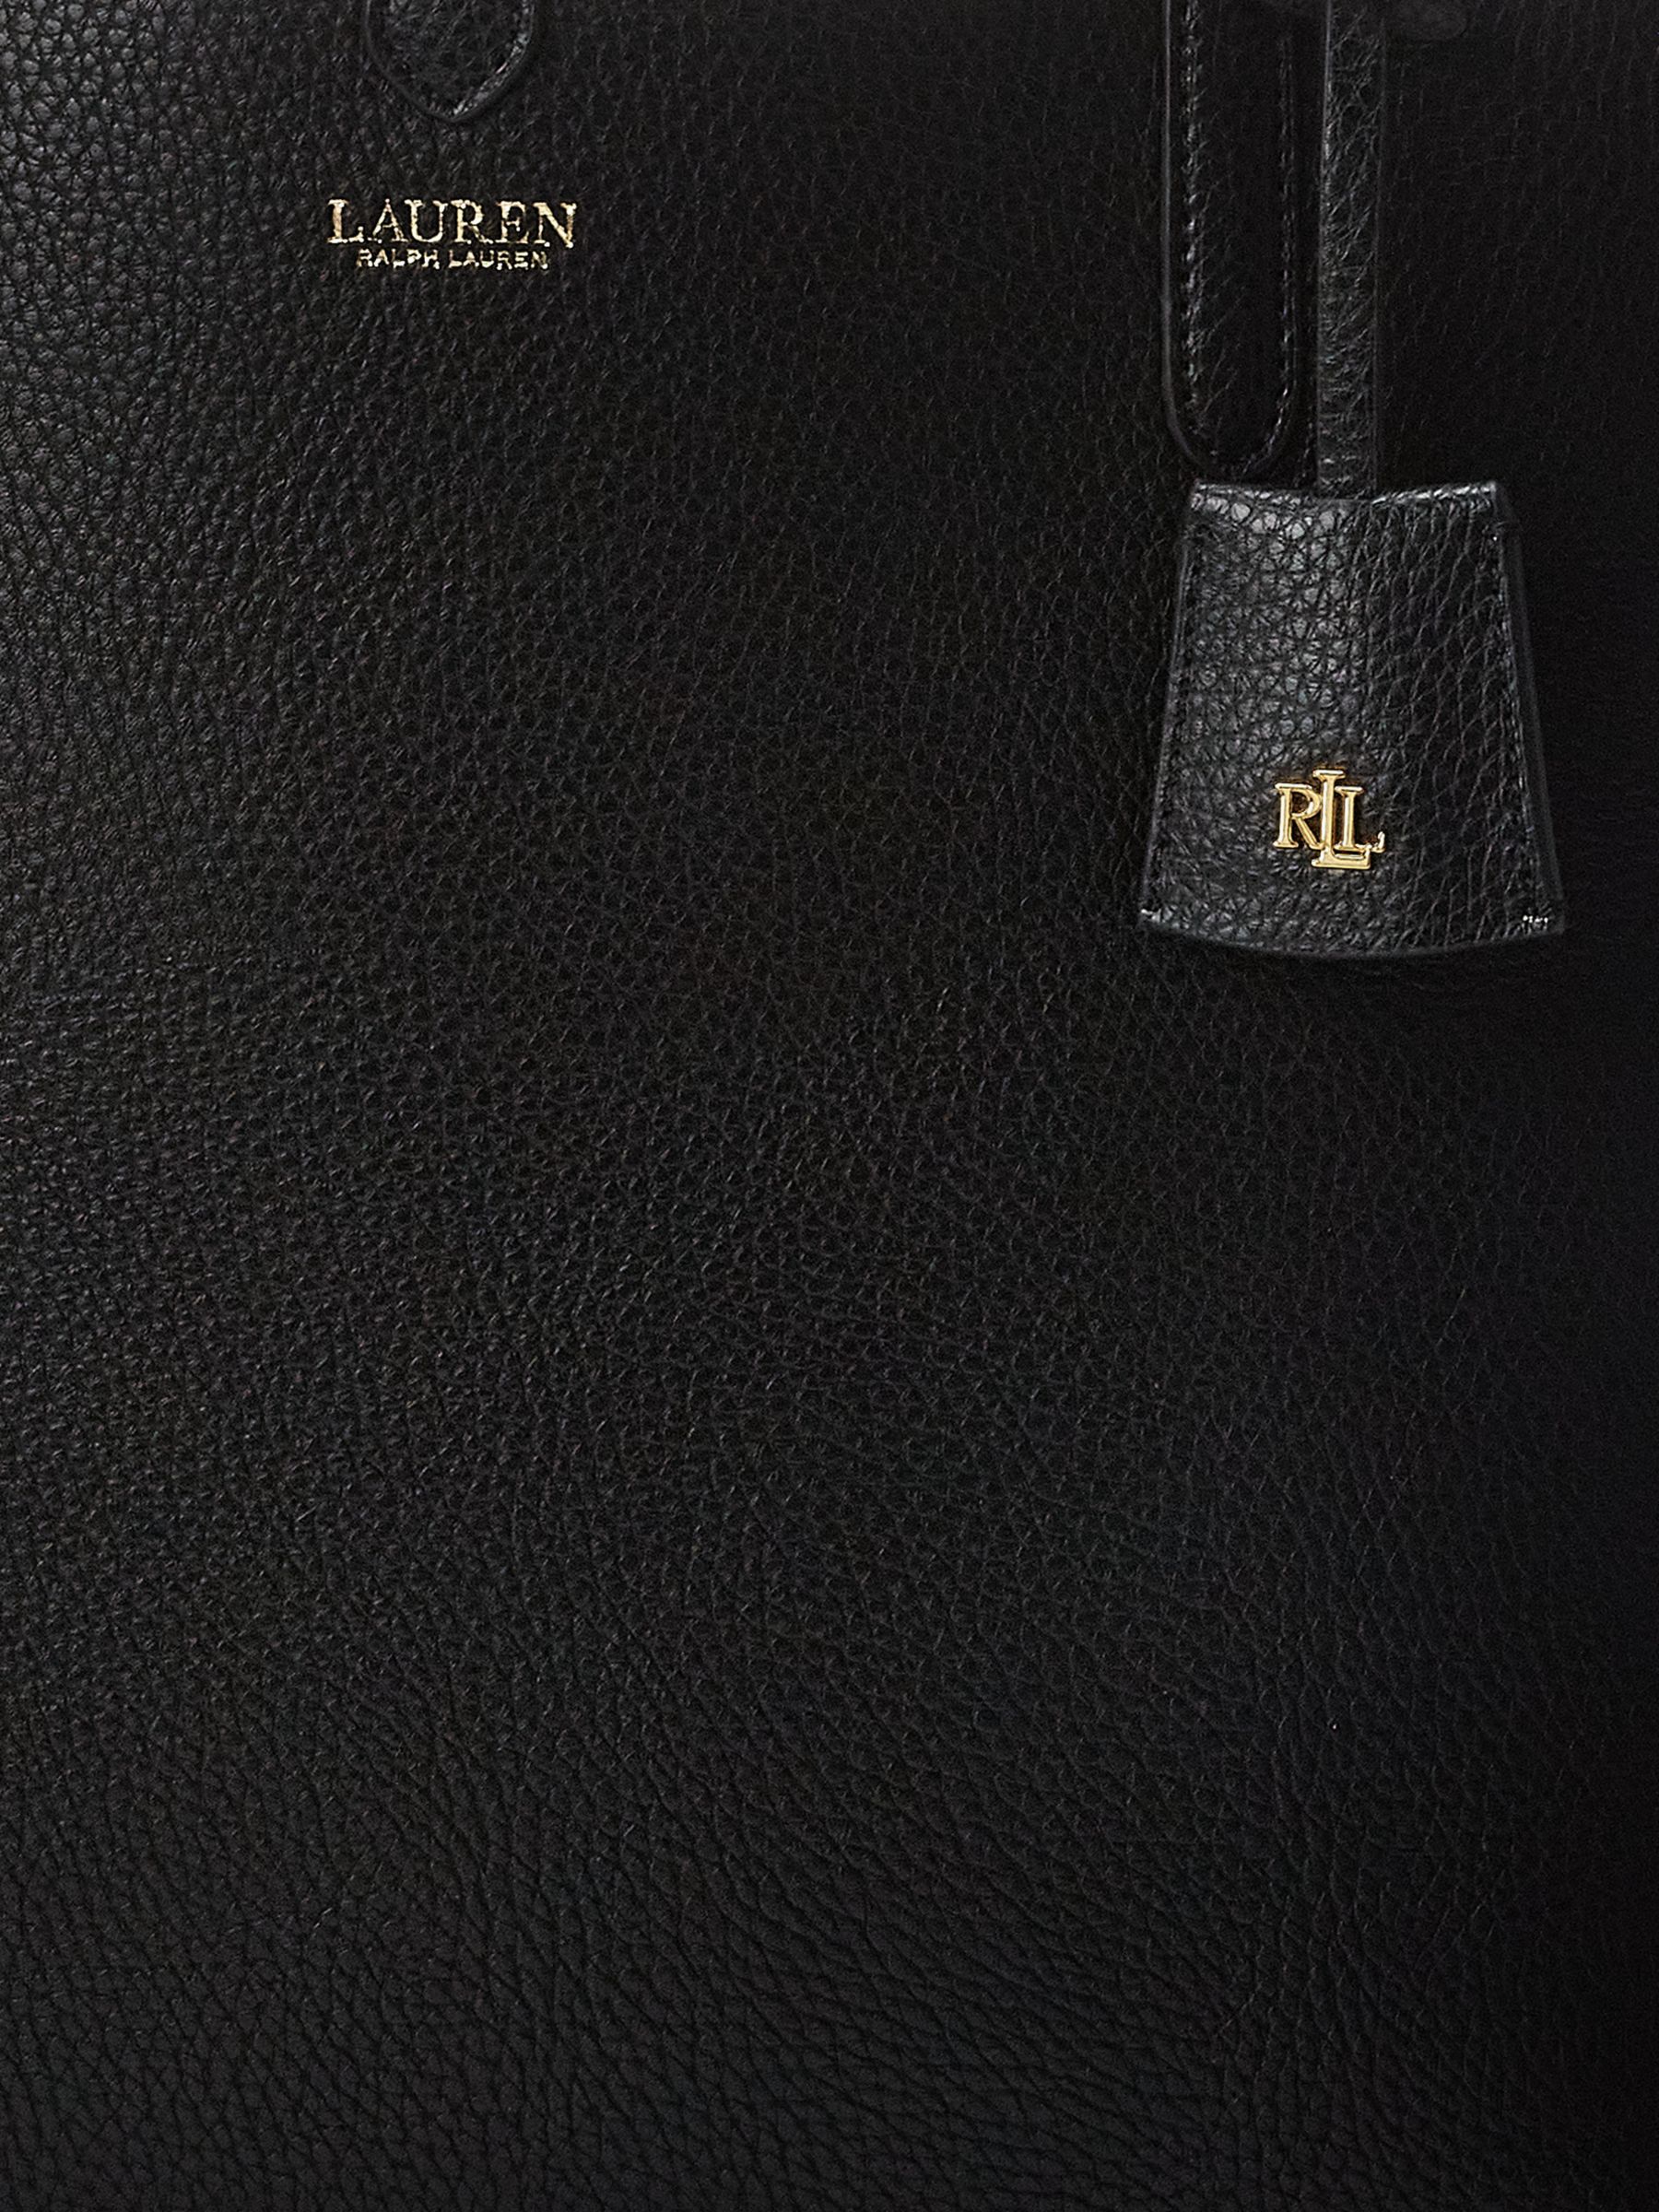 Lauren Ralph Lauren Reversible Tote Bag, Black/Taupe at John Lewis &  Partners